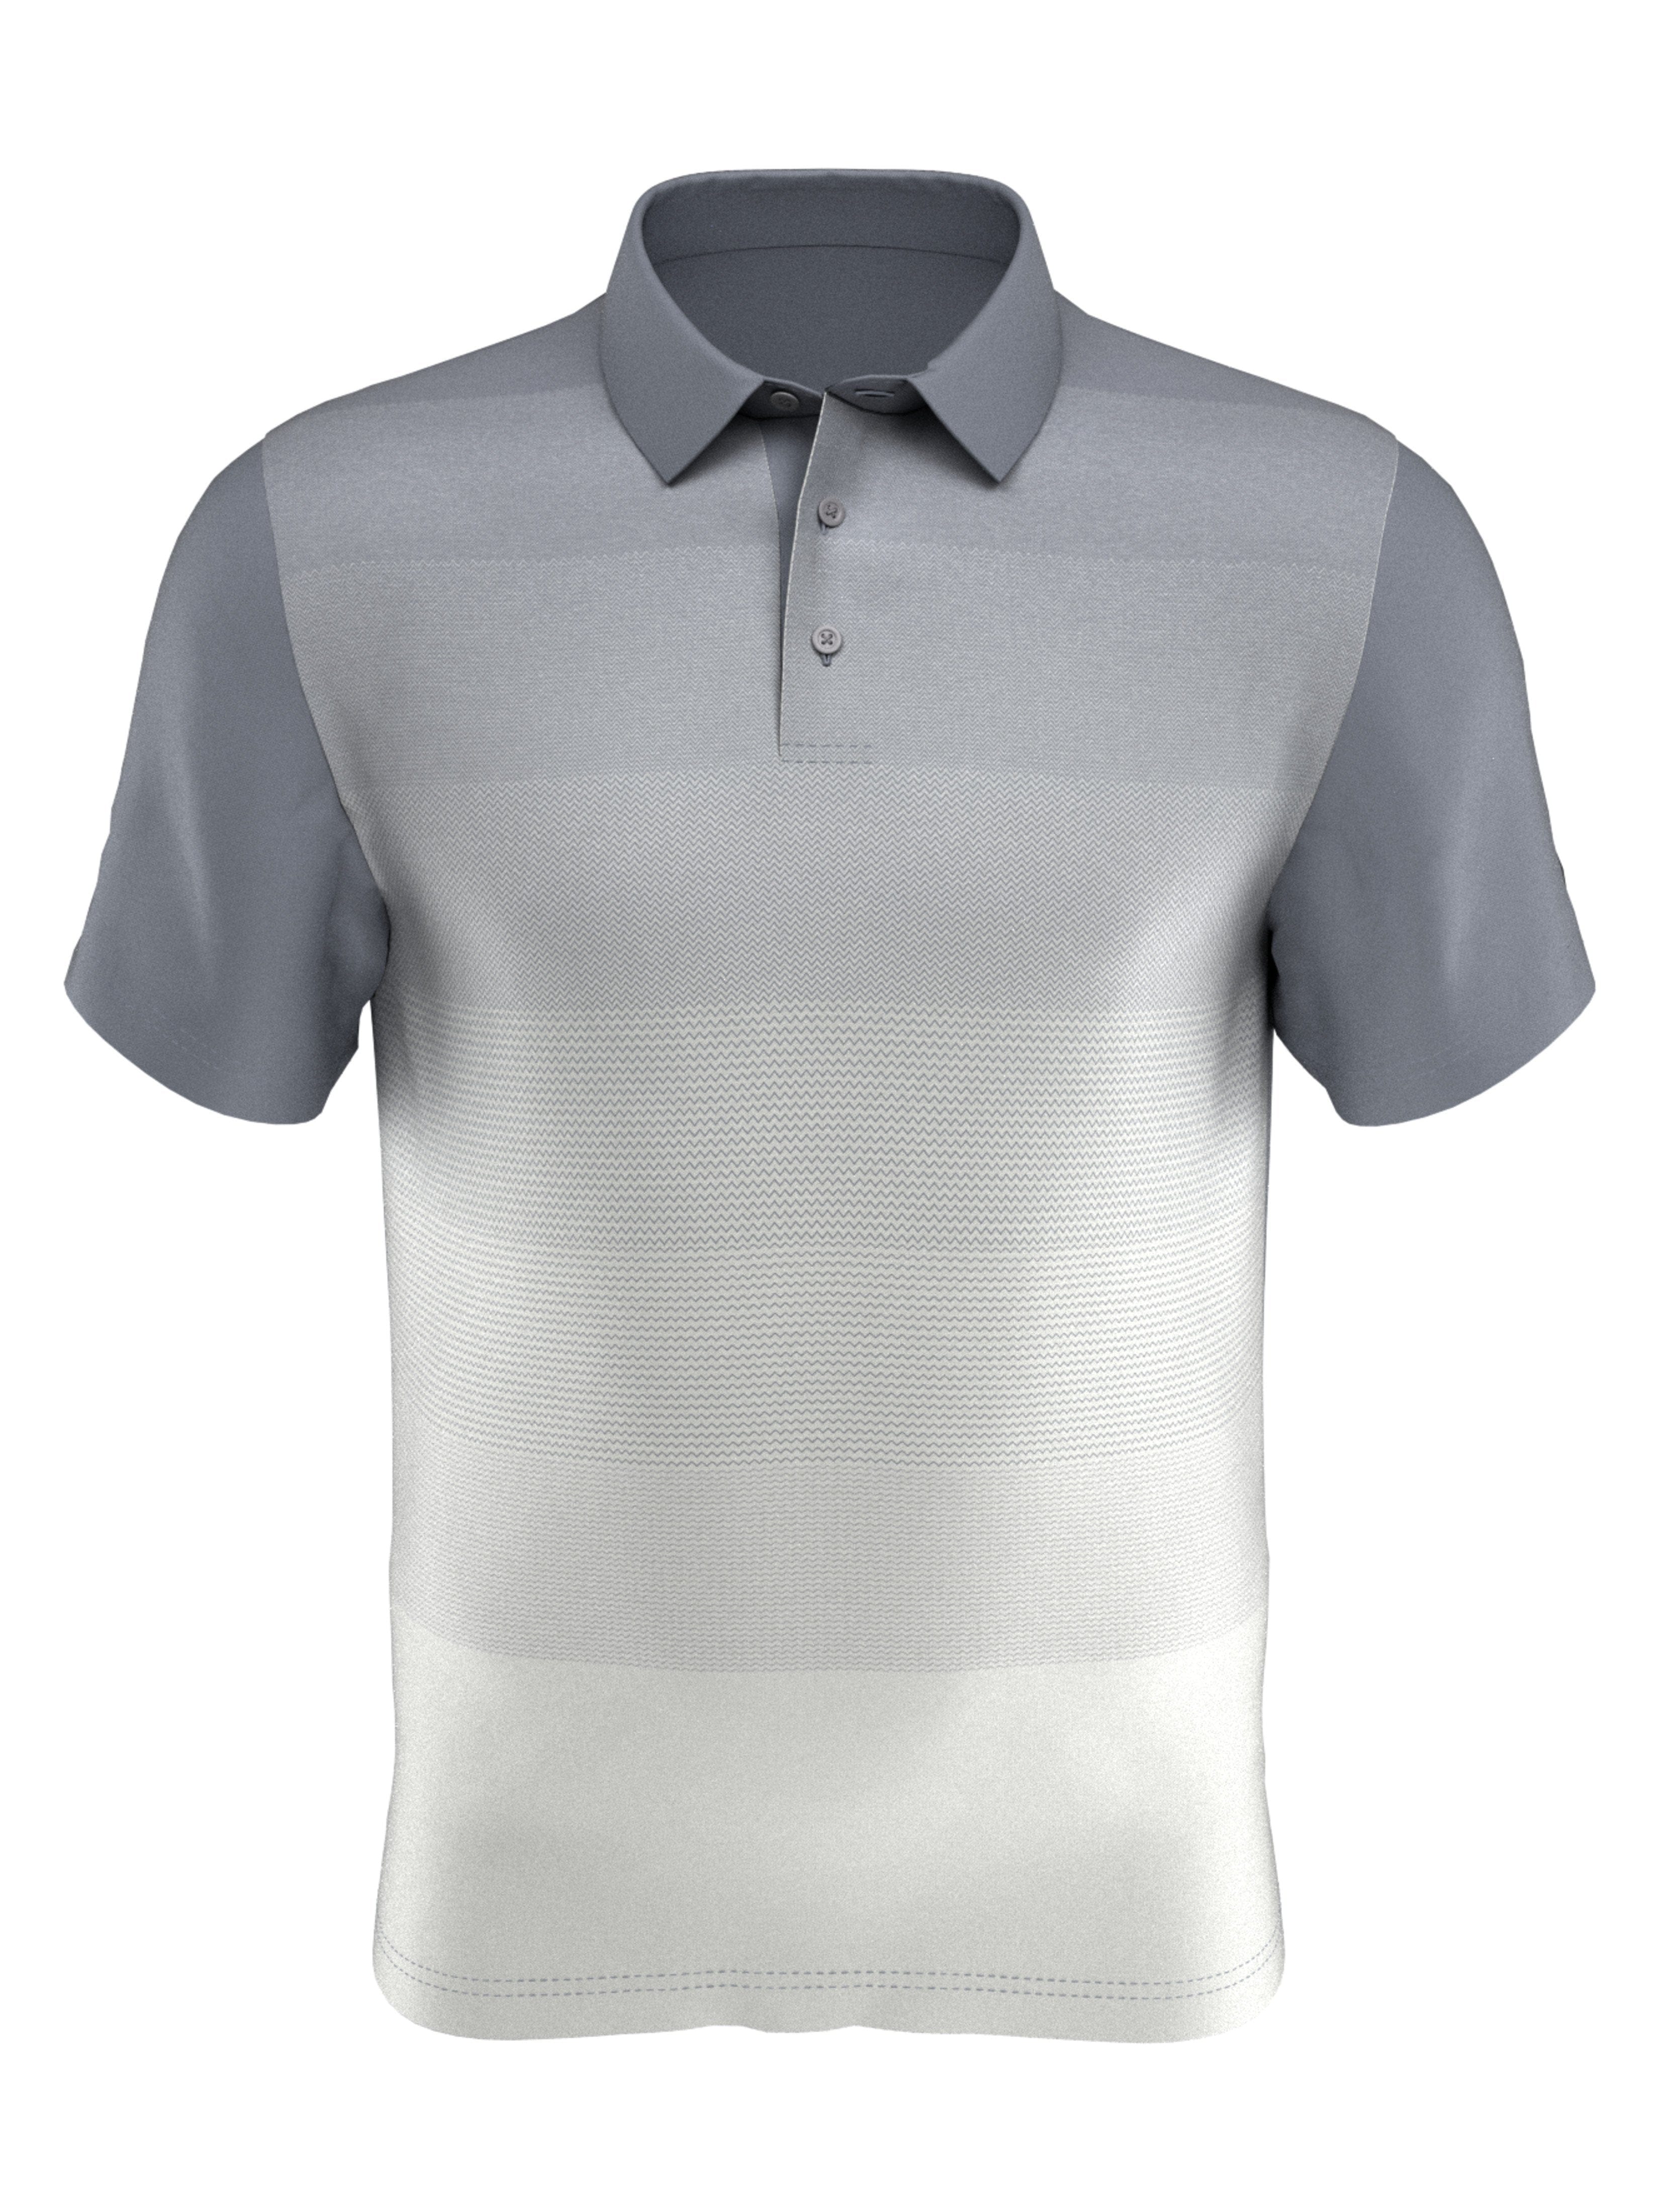 PGA TOUR Apparel Boys Front Ombre Polo Shirt, Size Medium, Tradewinds Gray, 100% Polyester | Golf Apparel Shop